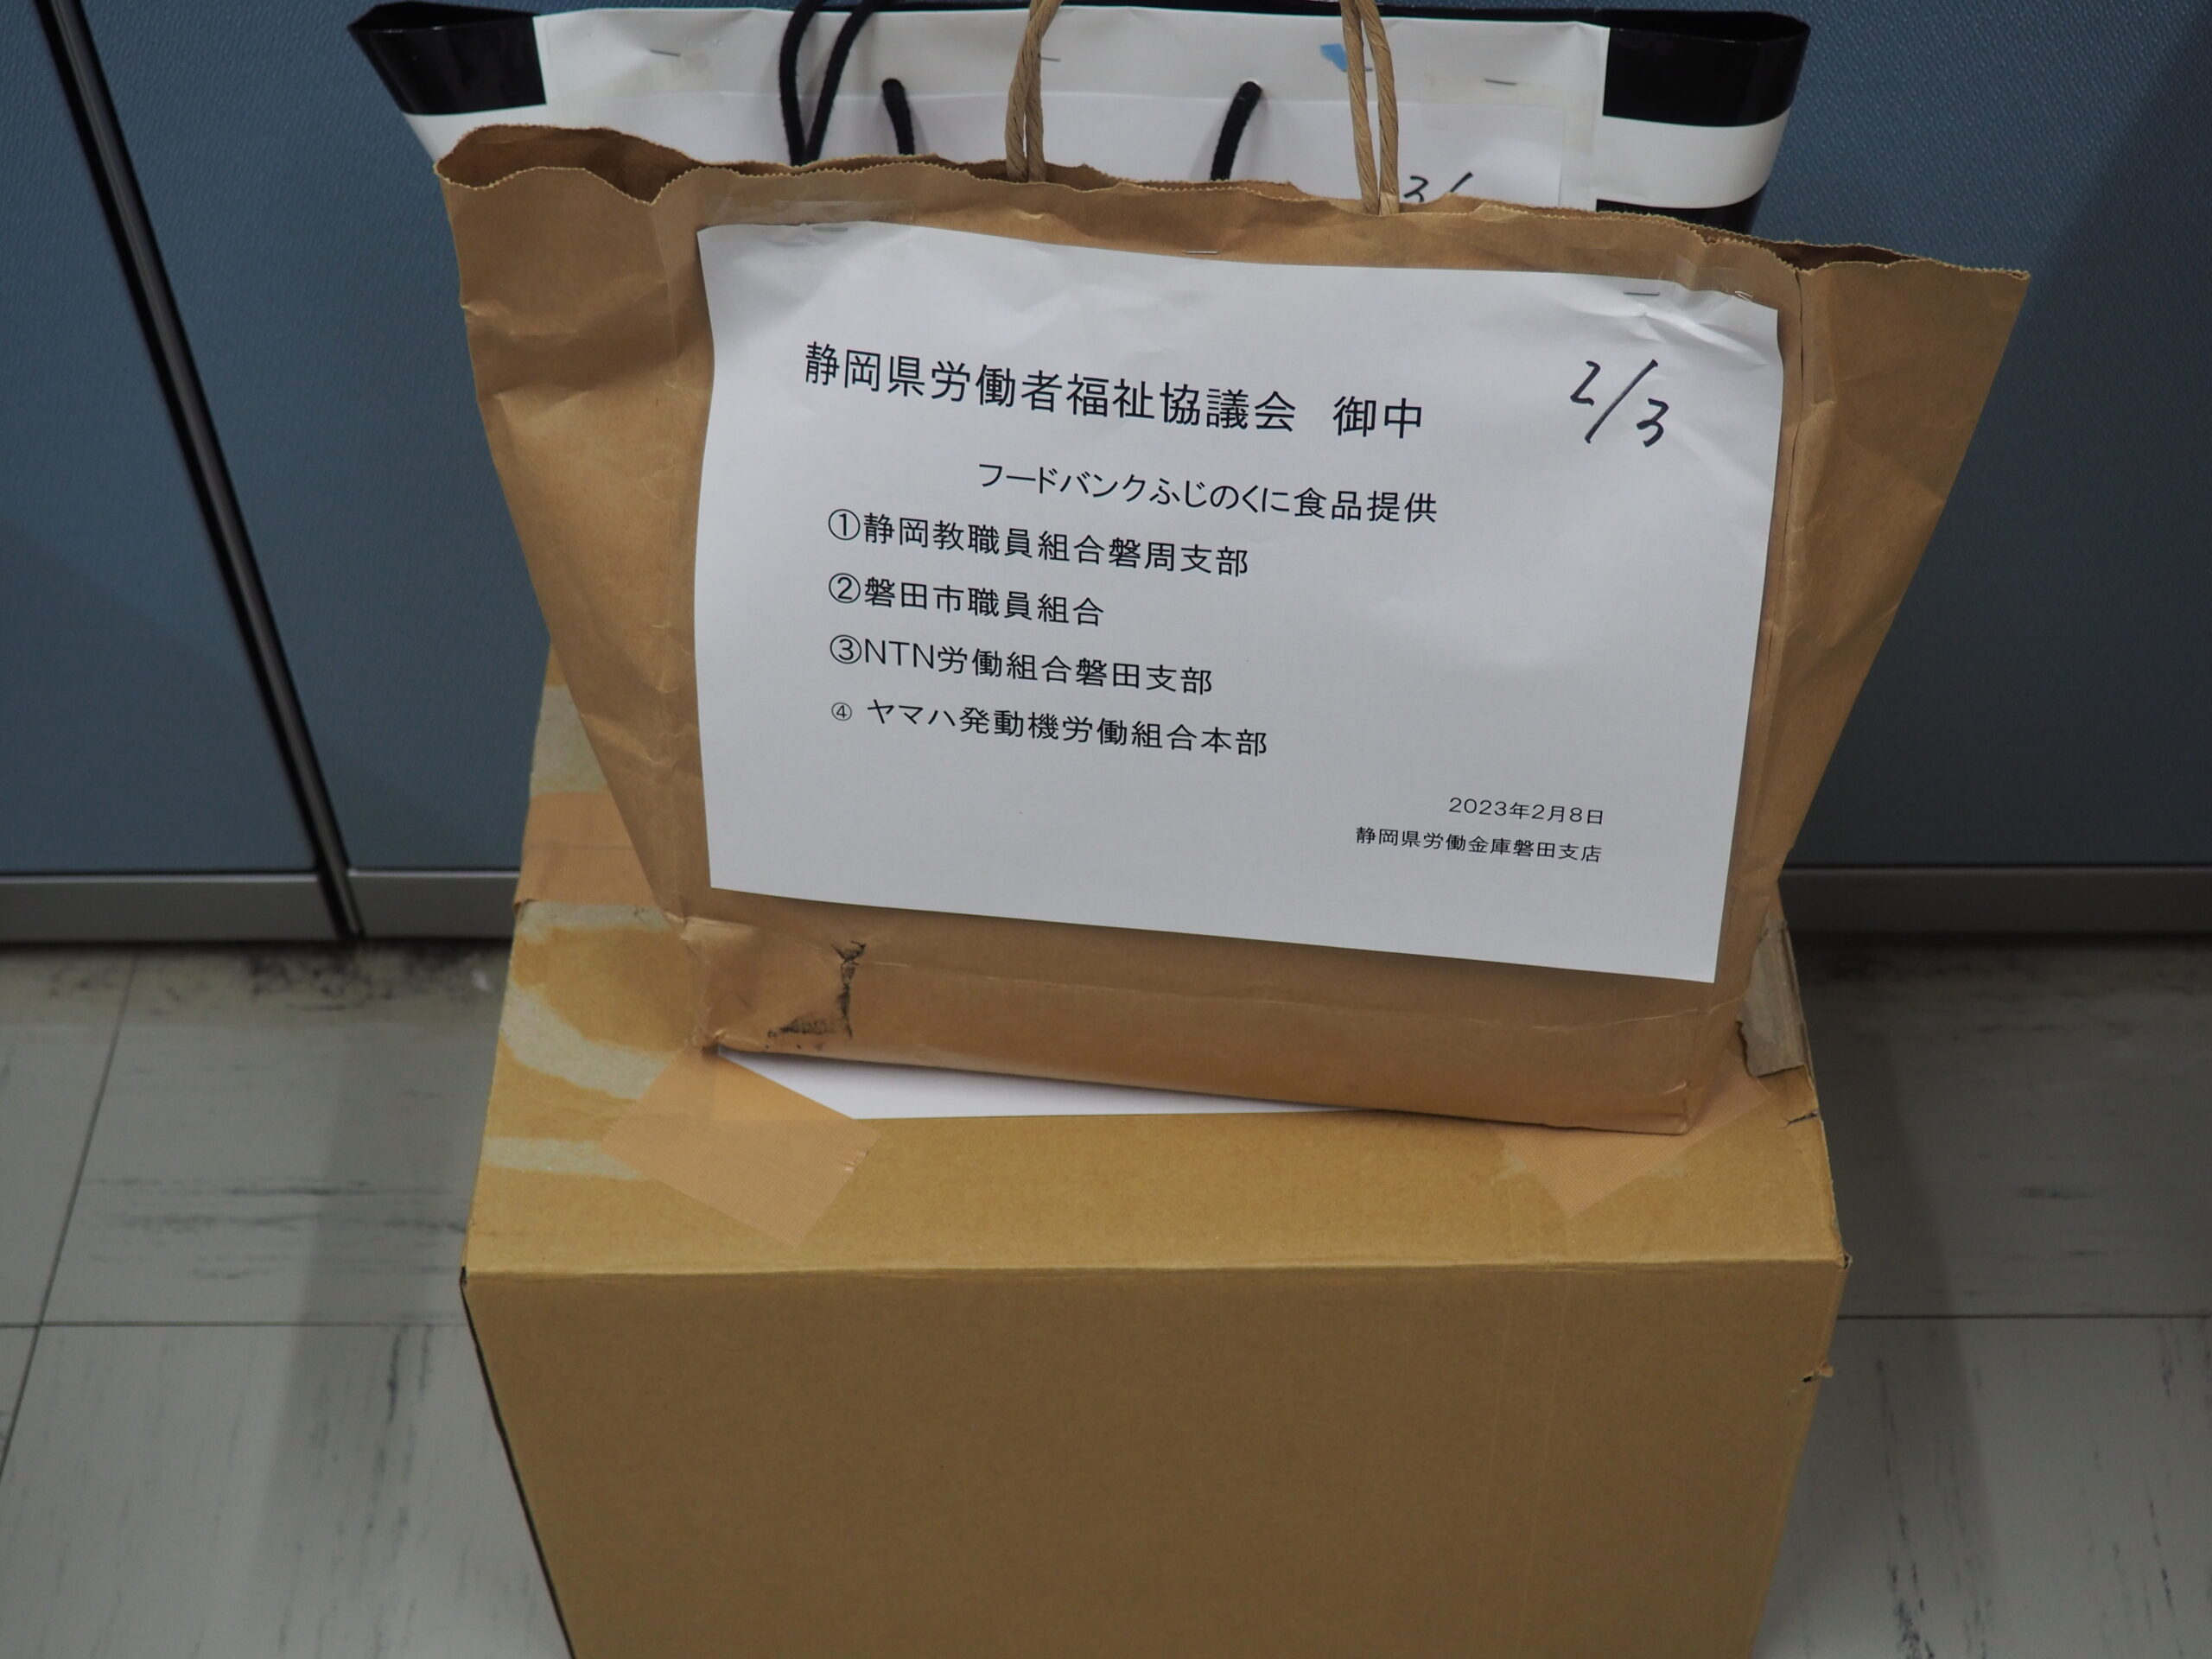 静岡教職員組合磐周支部様・磐田市職員組合様・ＮＴＮ労働組合磐田支部様から食品を提供いただきました。